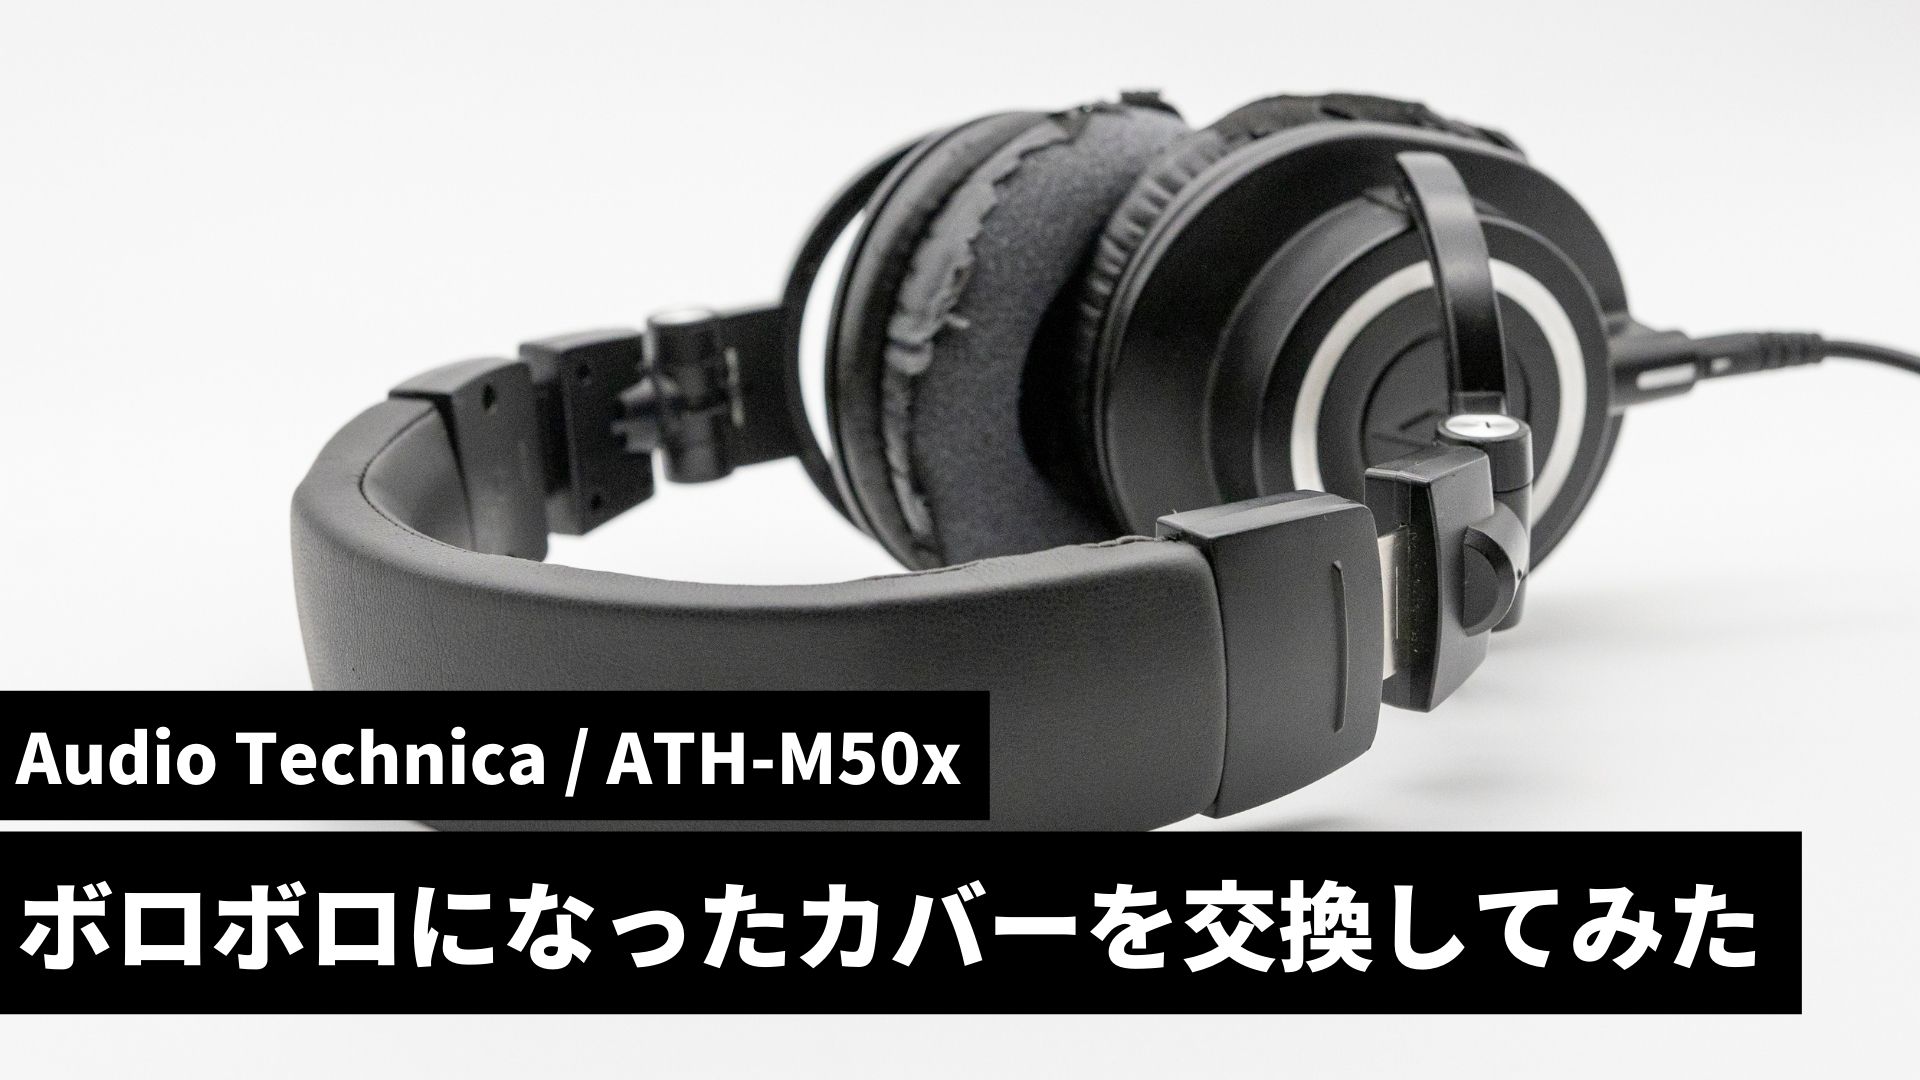 「Audio Technica ATH-M50x」のヘッドホンカバーを交換してみた